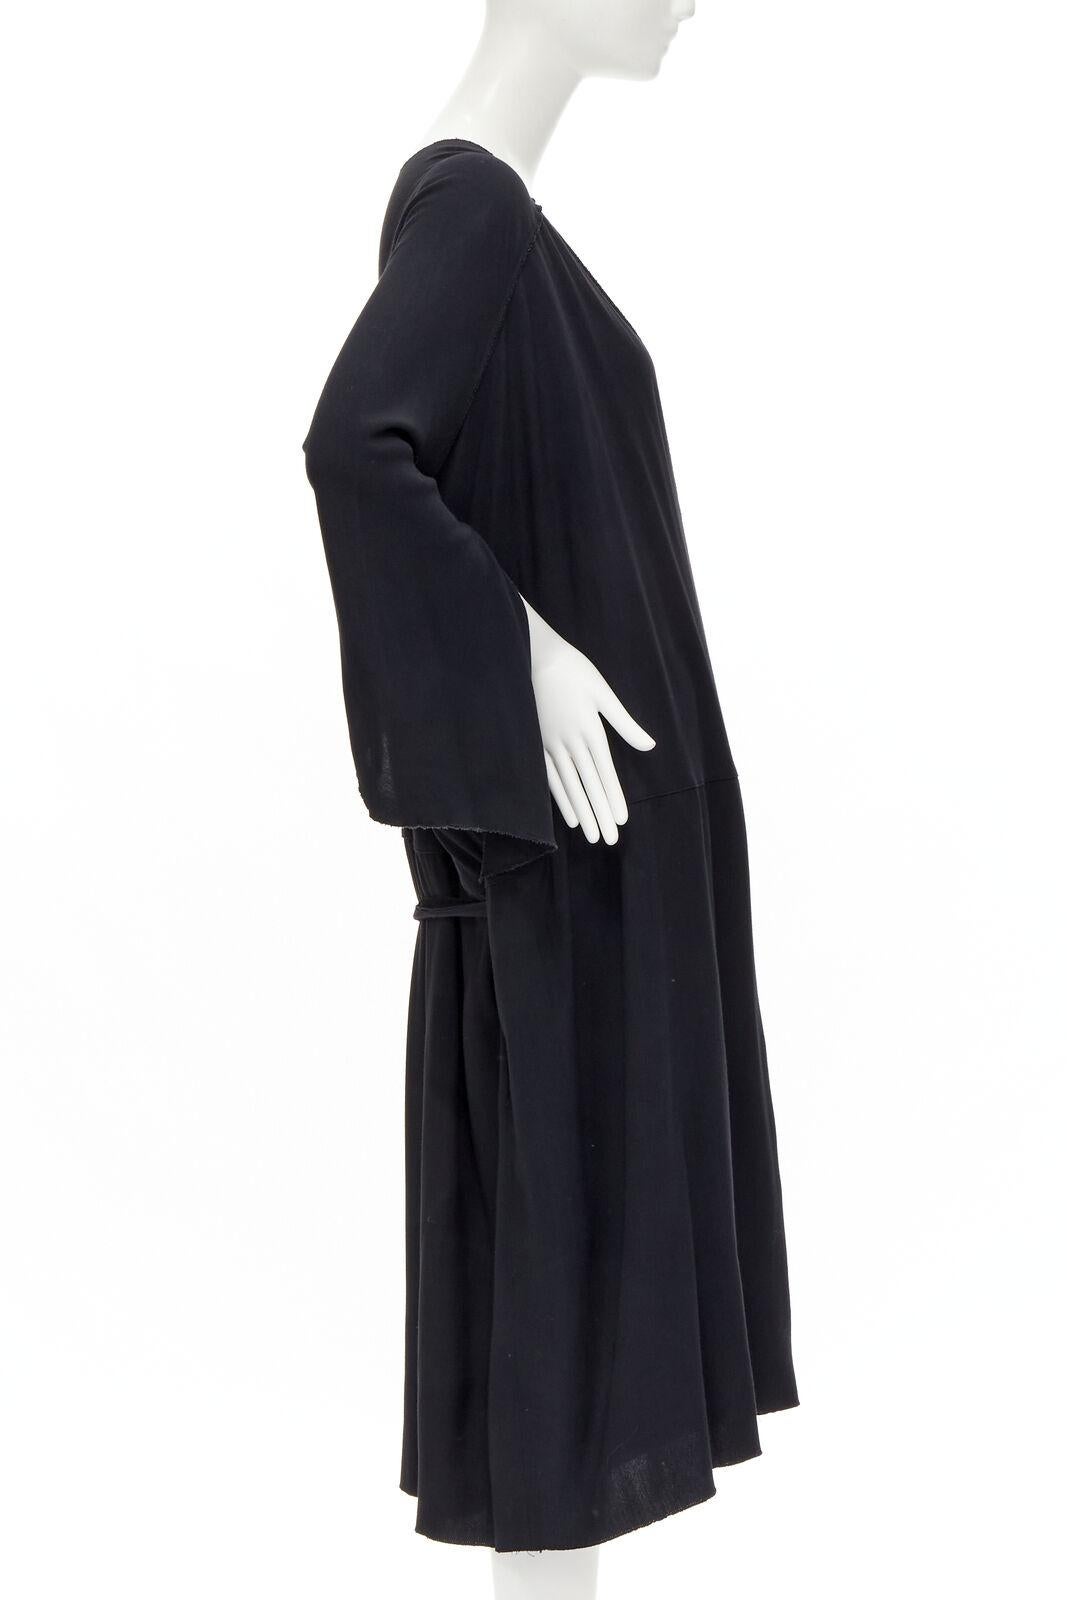 COMME DES GARCONS - Robe kimono asymétrique noire, vintage, années 1980 Excellent état - En vente à Hong Kong, NT